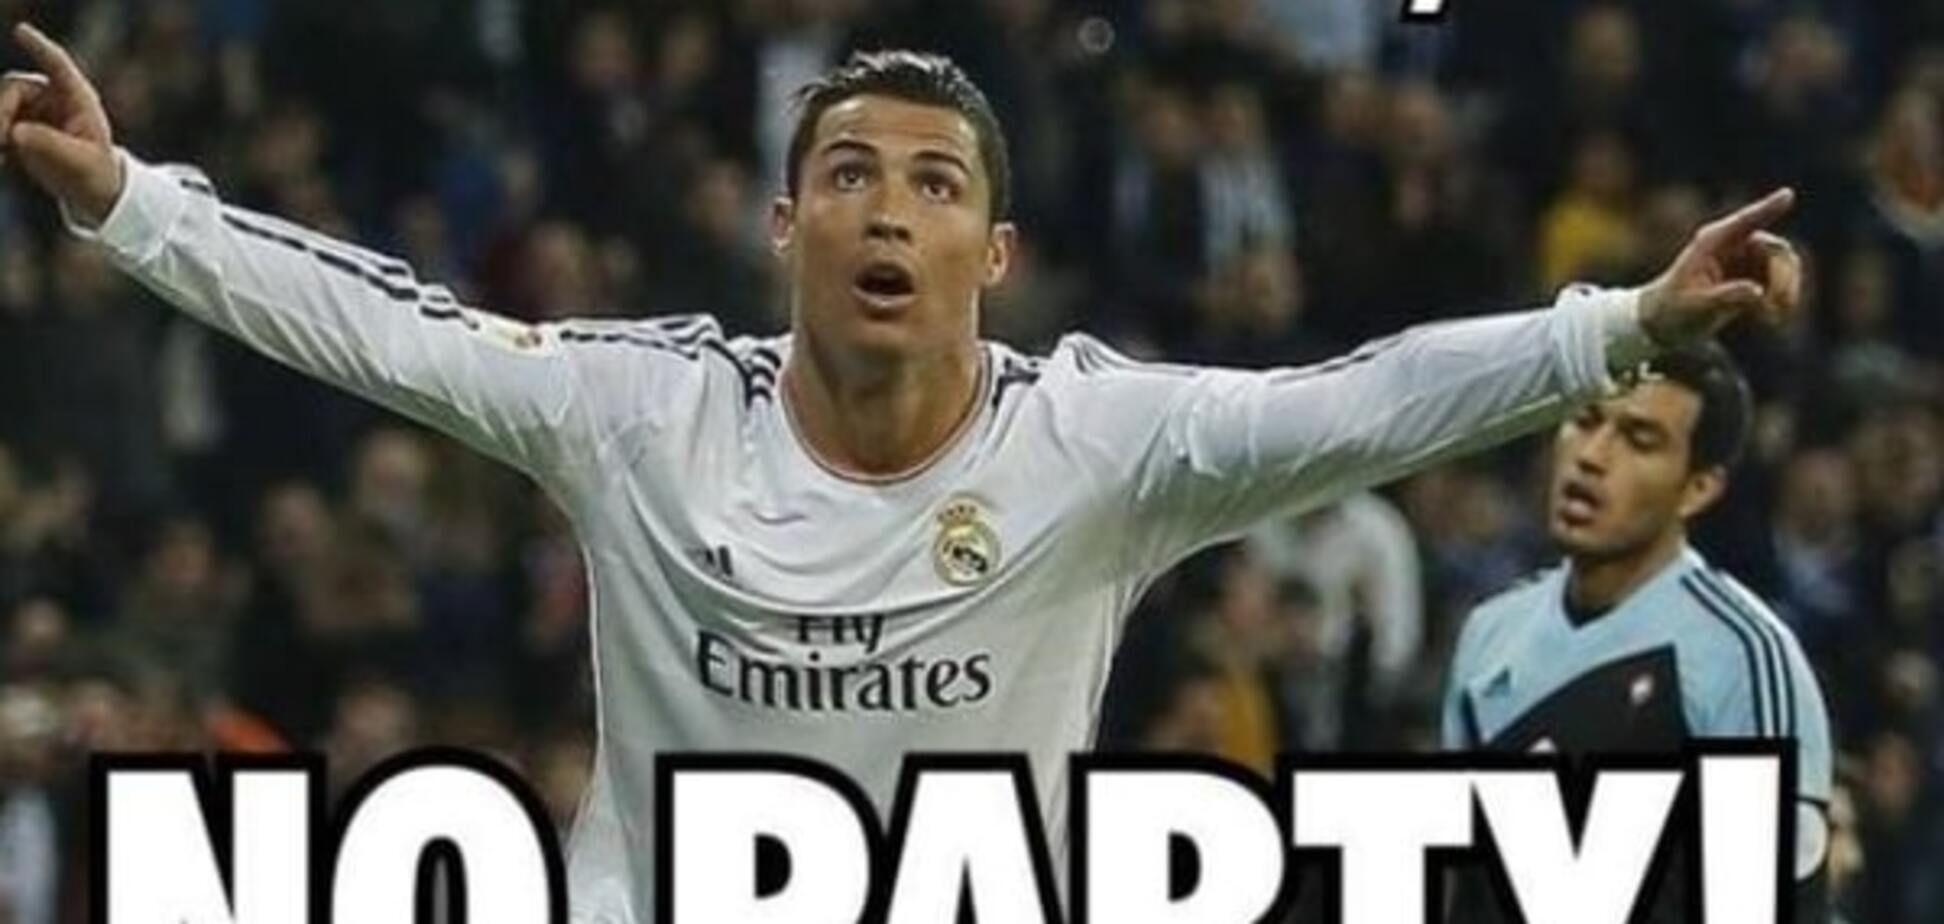 'Реал' не может – судья поможет!' Соцсети взорвали фотожабы на скандальный матч 'Шахтера' в Лиге чемпионов